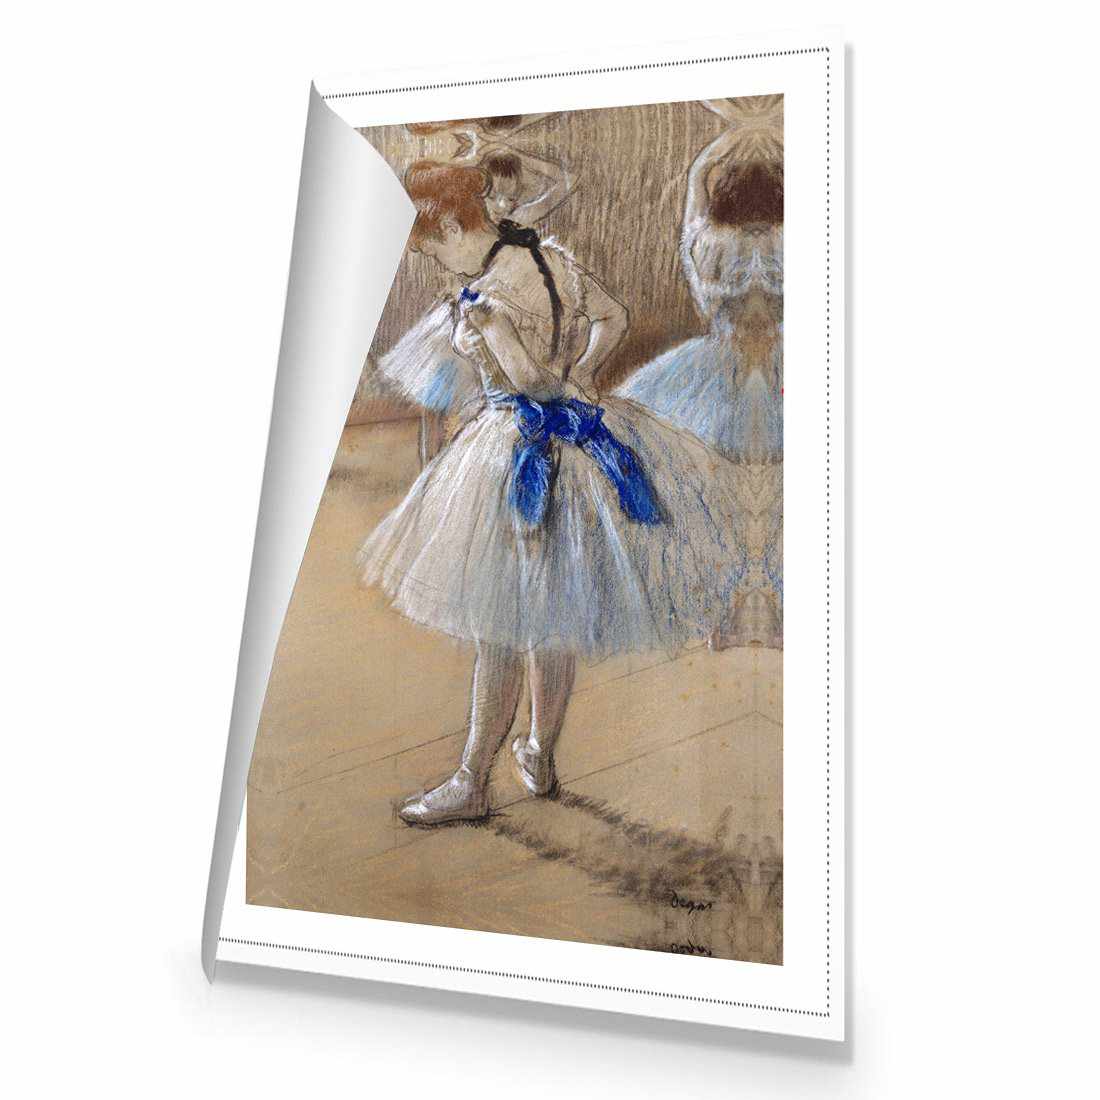 Dancer by Edgar Degas Canvas Art-Canvas-Wall Art Designs-45x30cm-Rolled Canvas-Wall Art Designs